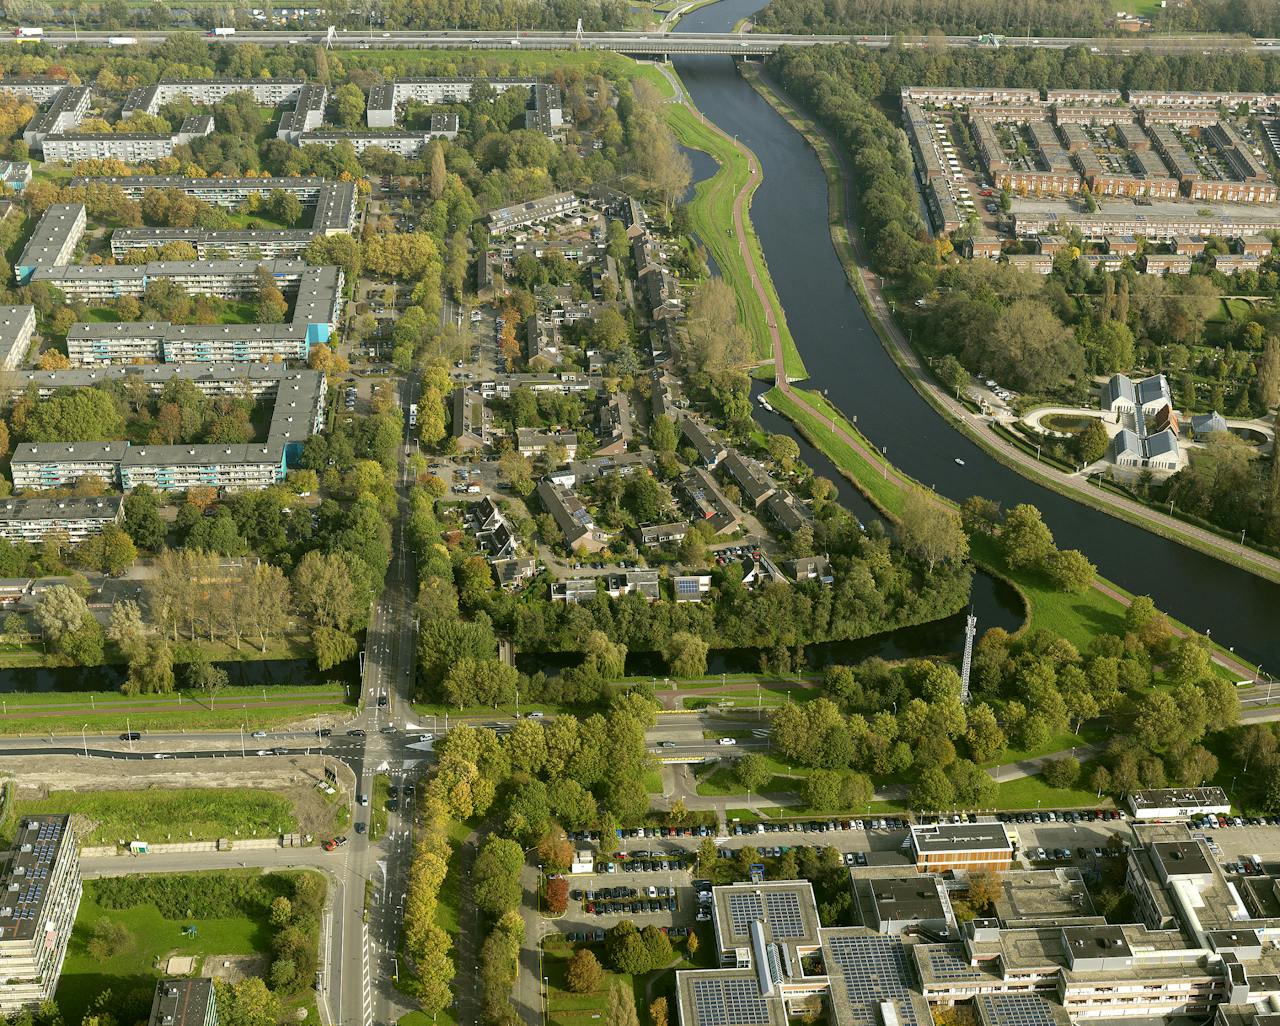 De wijk Banne-Noord ligt aan de rand van Amsterdam. De buurt bestaat uit sociale huurflats en koopwoningen, voornamelijk rijtjeshuizen. In 2023 wil de gemeente hier de huizen van het aardgas afhalen.